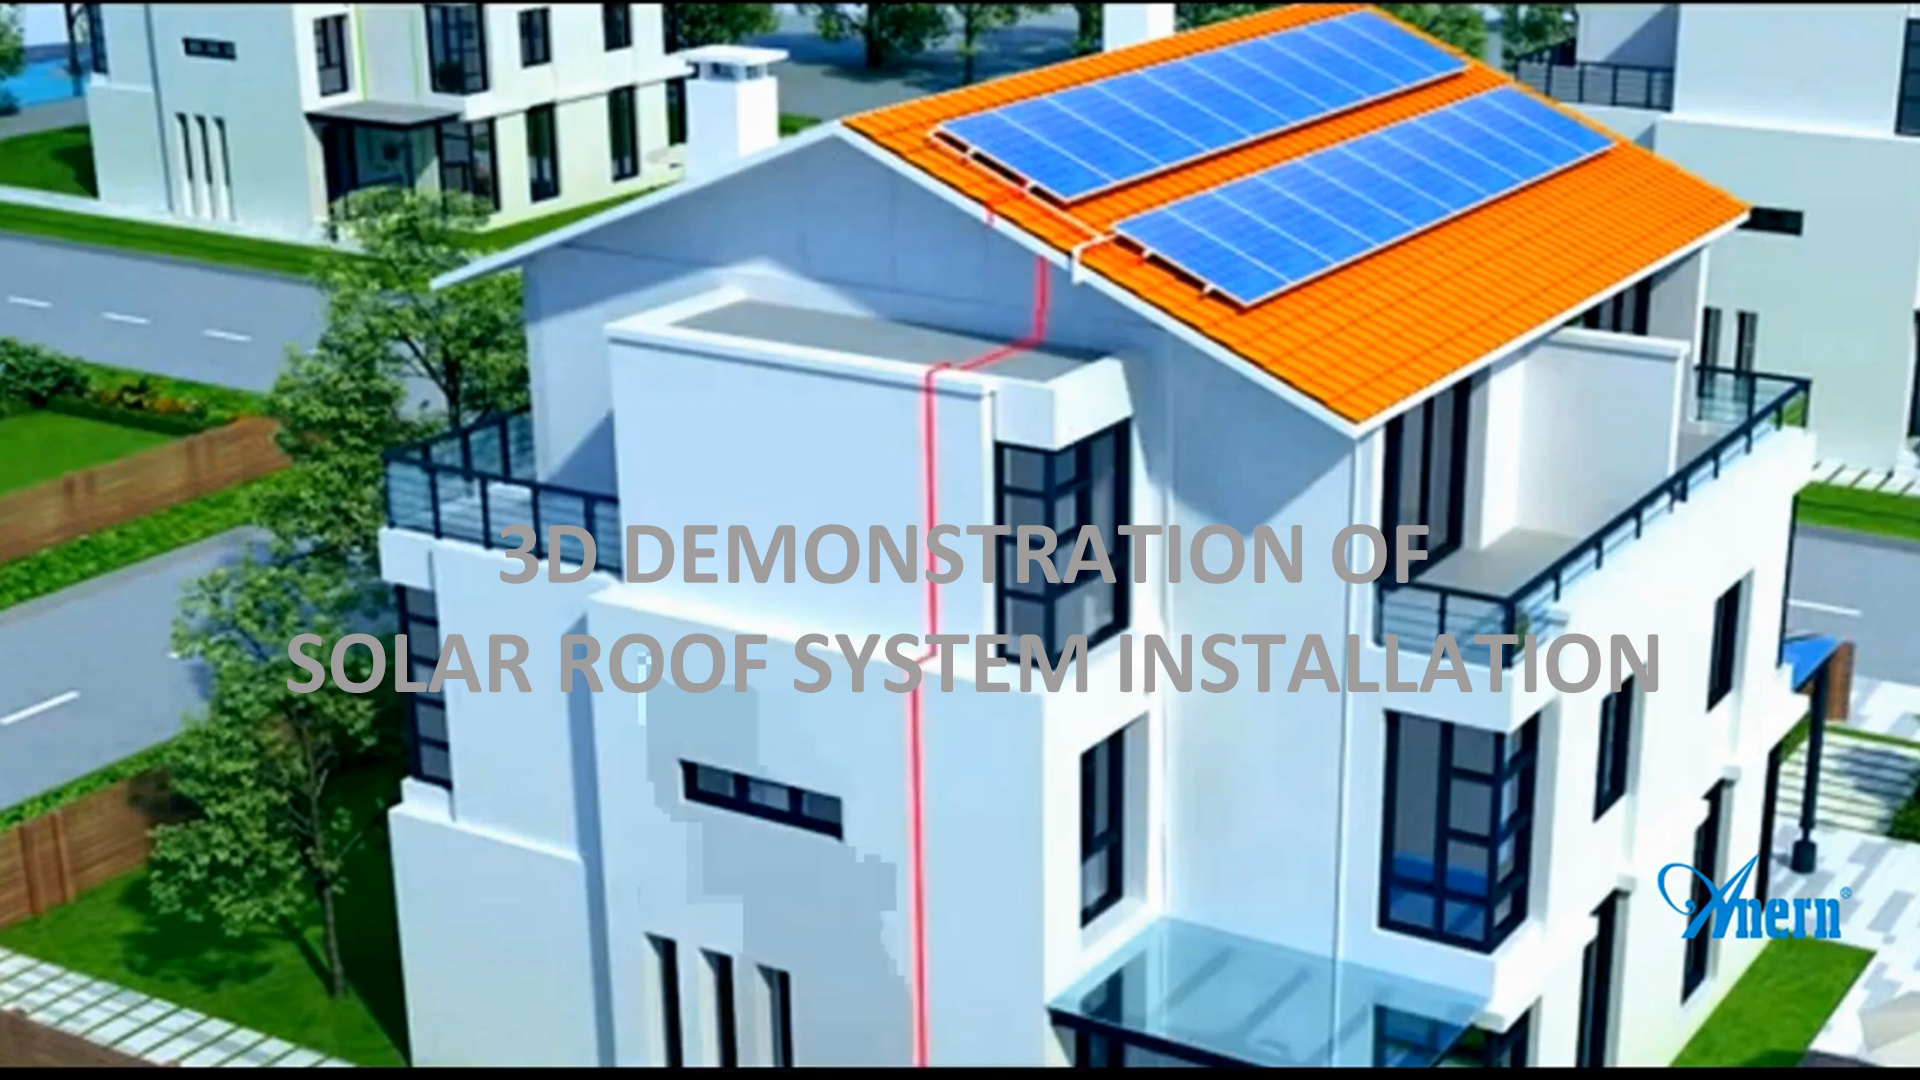 Dimostrazione 3D dell'installazione del sistema di tetto solare